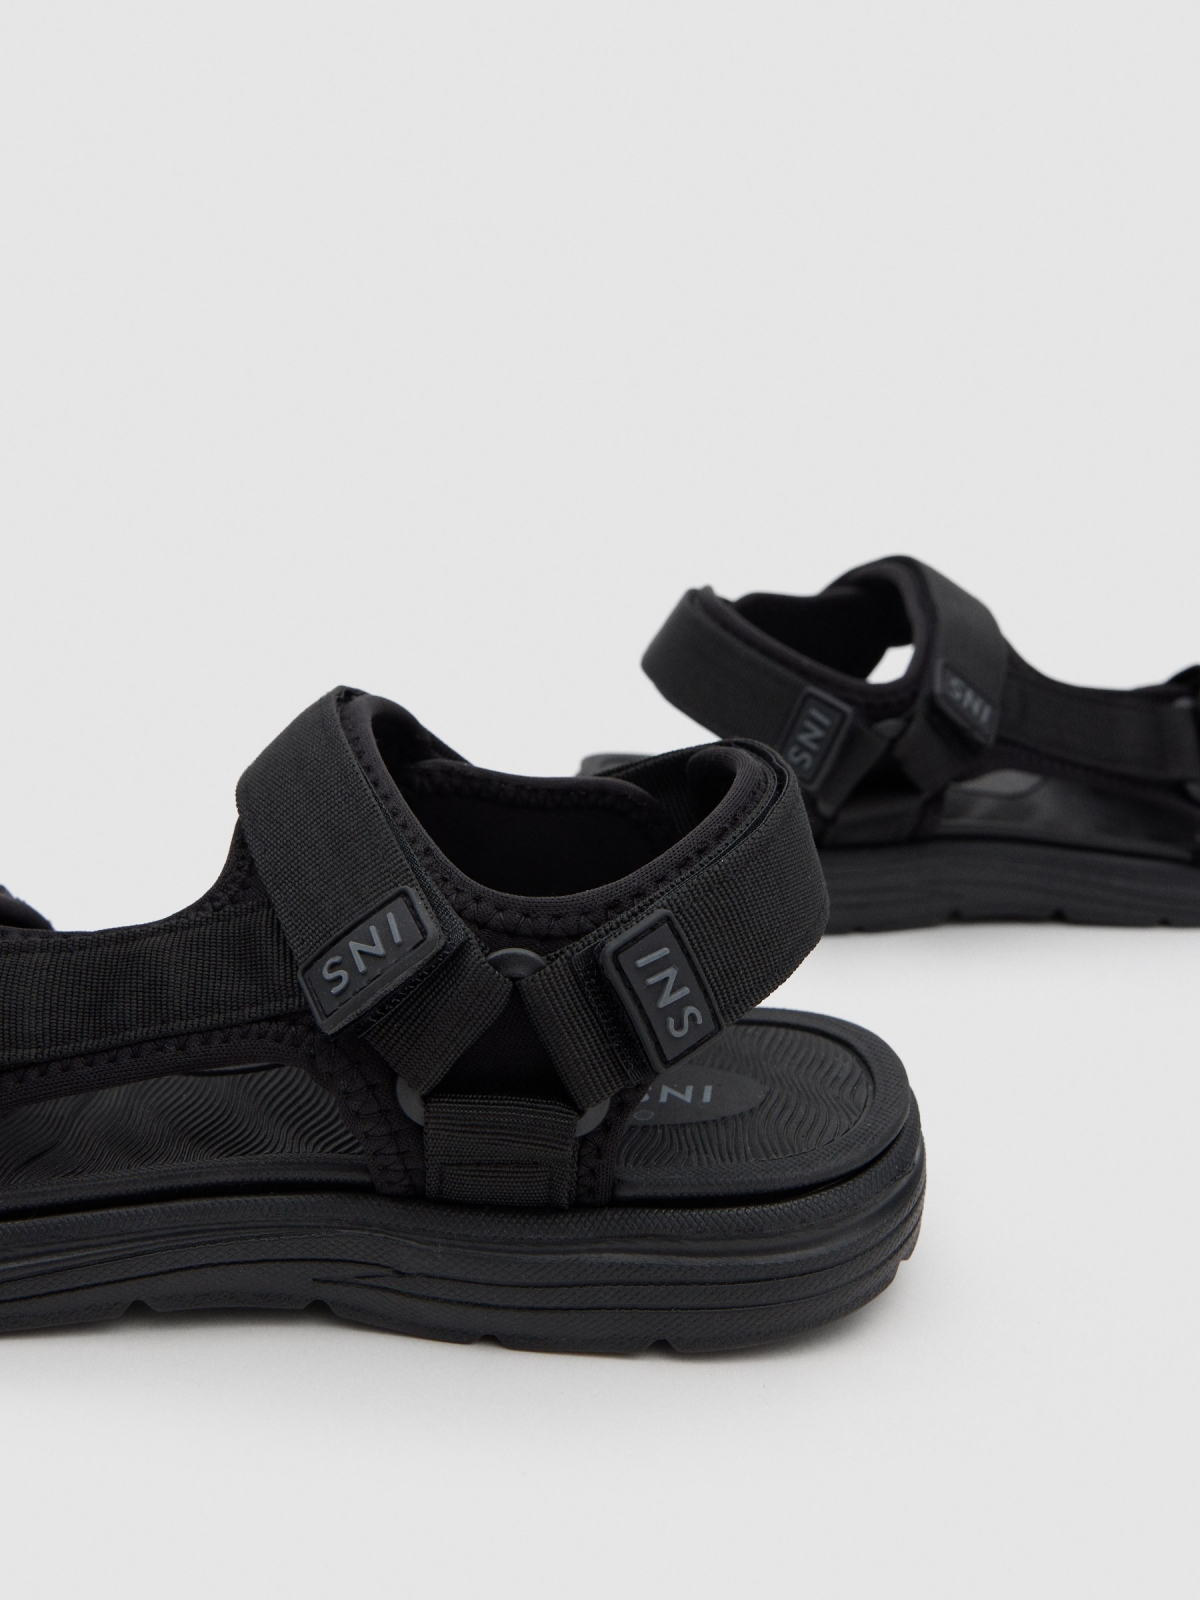 Black nylon sports sandal black detail view